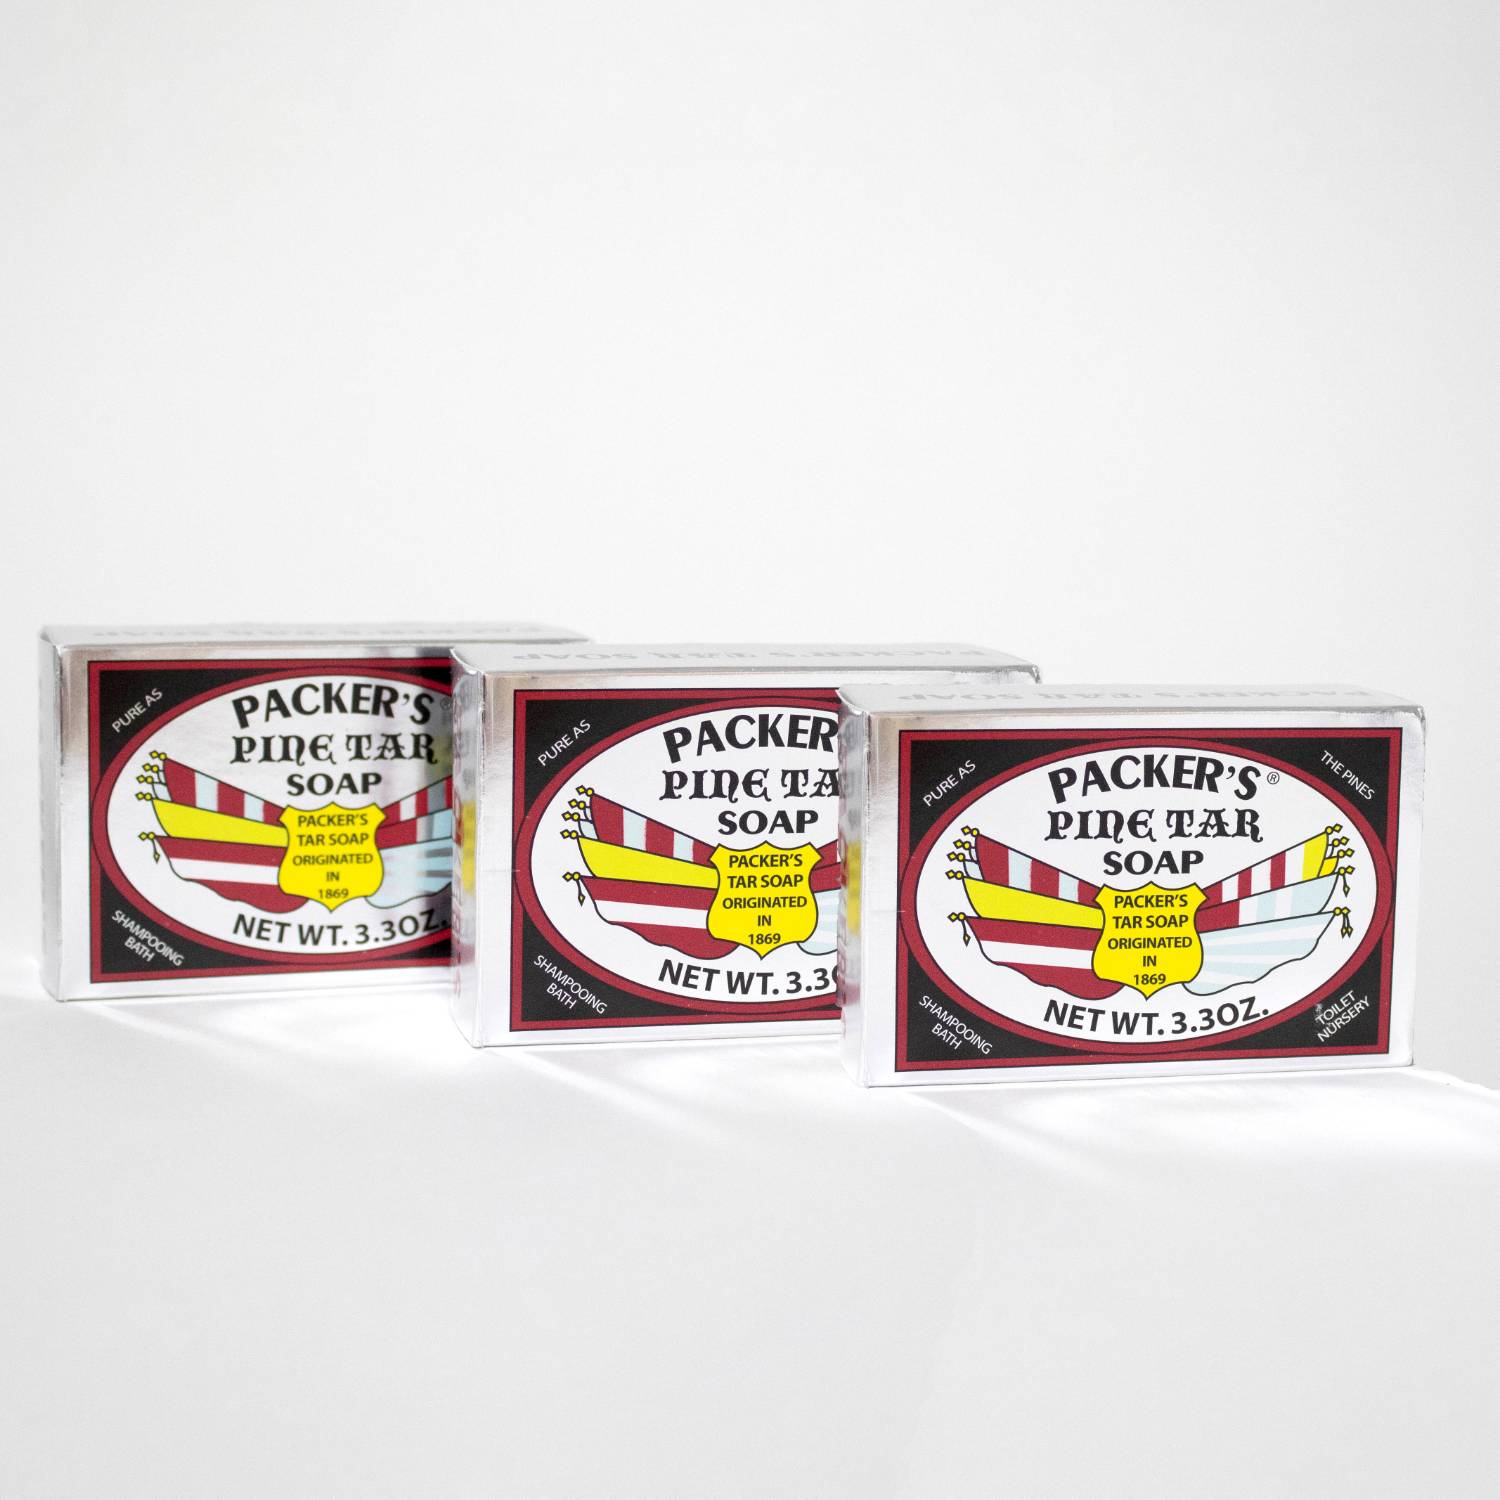 Packer's Pine Tar Soap 3.30 oz - 1 Pack